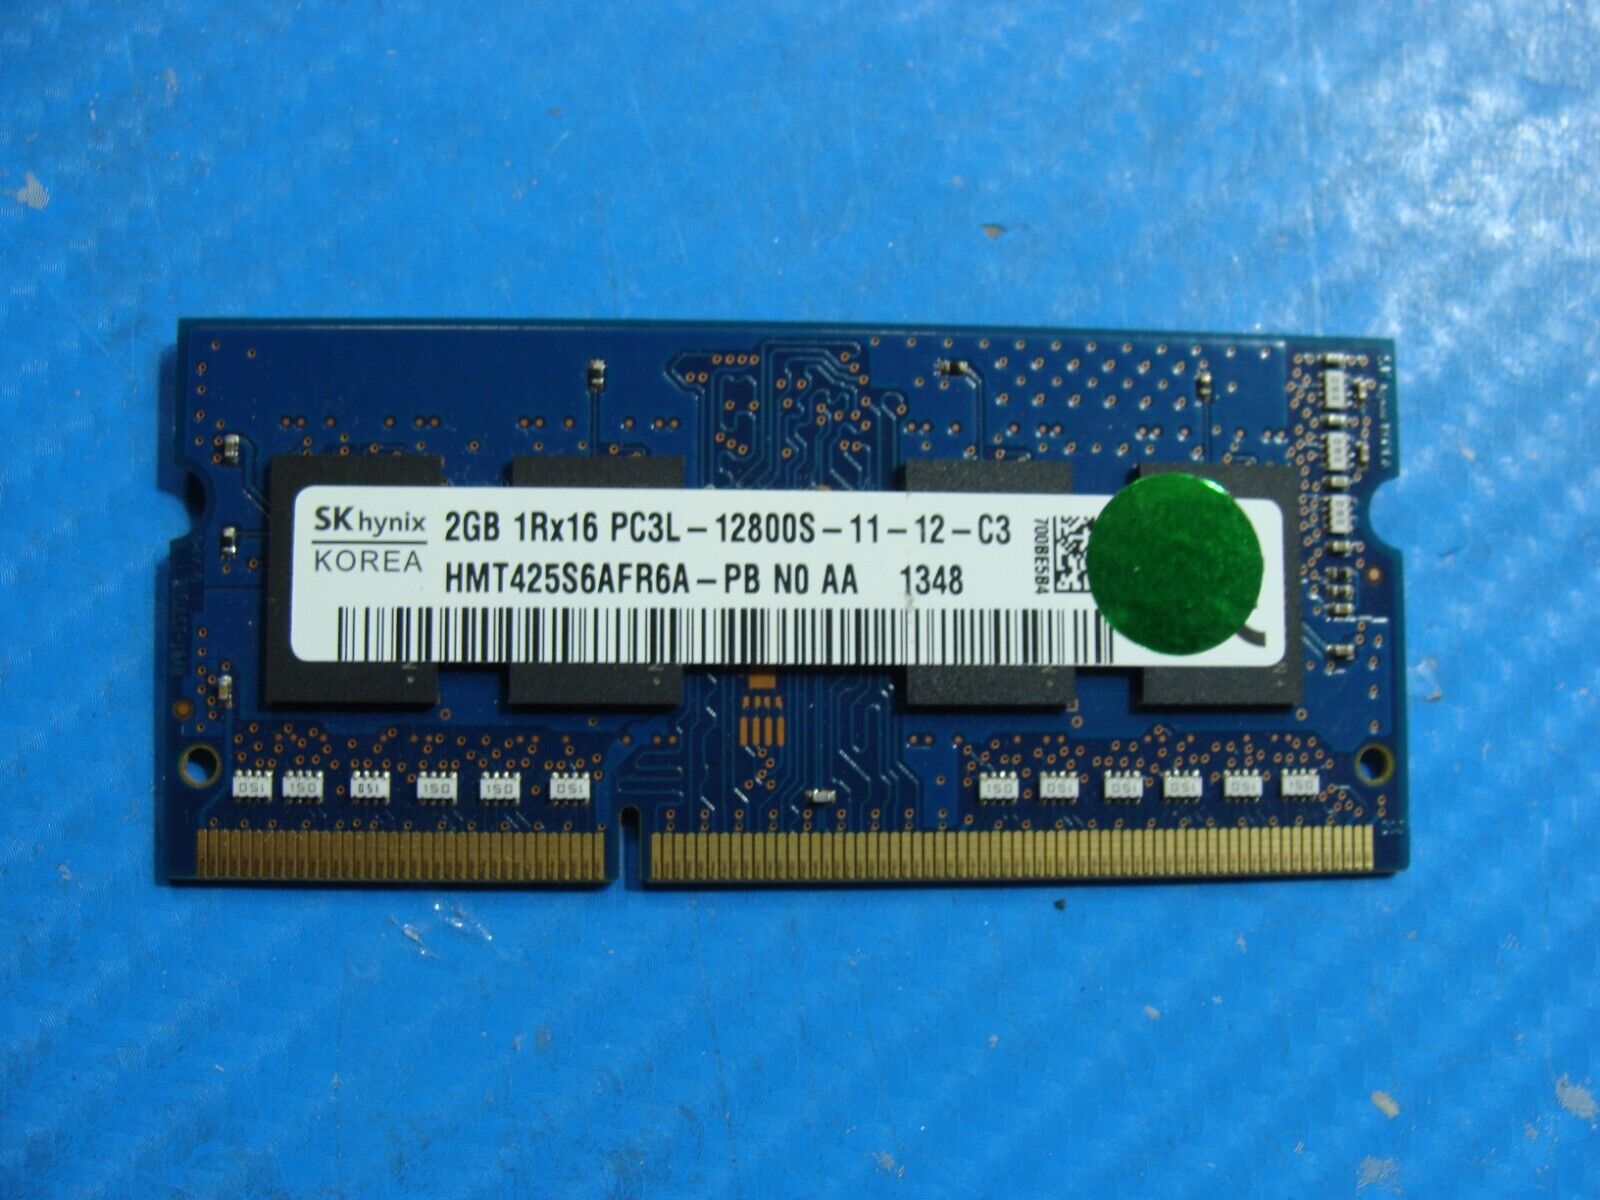 Asus Q301LA-BSI5T17 SK Hynix 2GB PC3L-12800S Memory RAM SO-DIMM HMT425S6CFR6A-PB